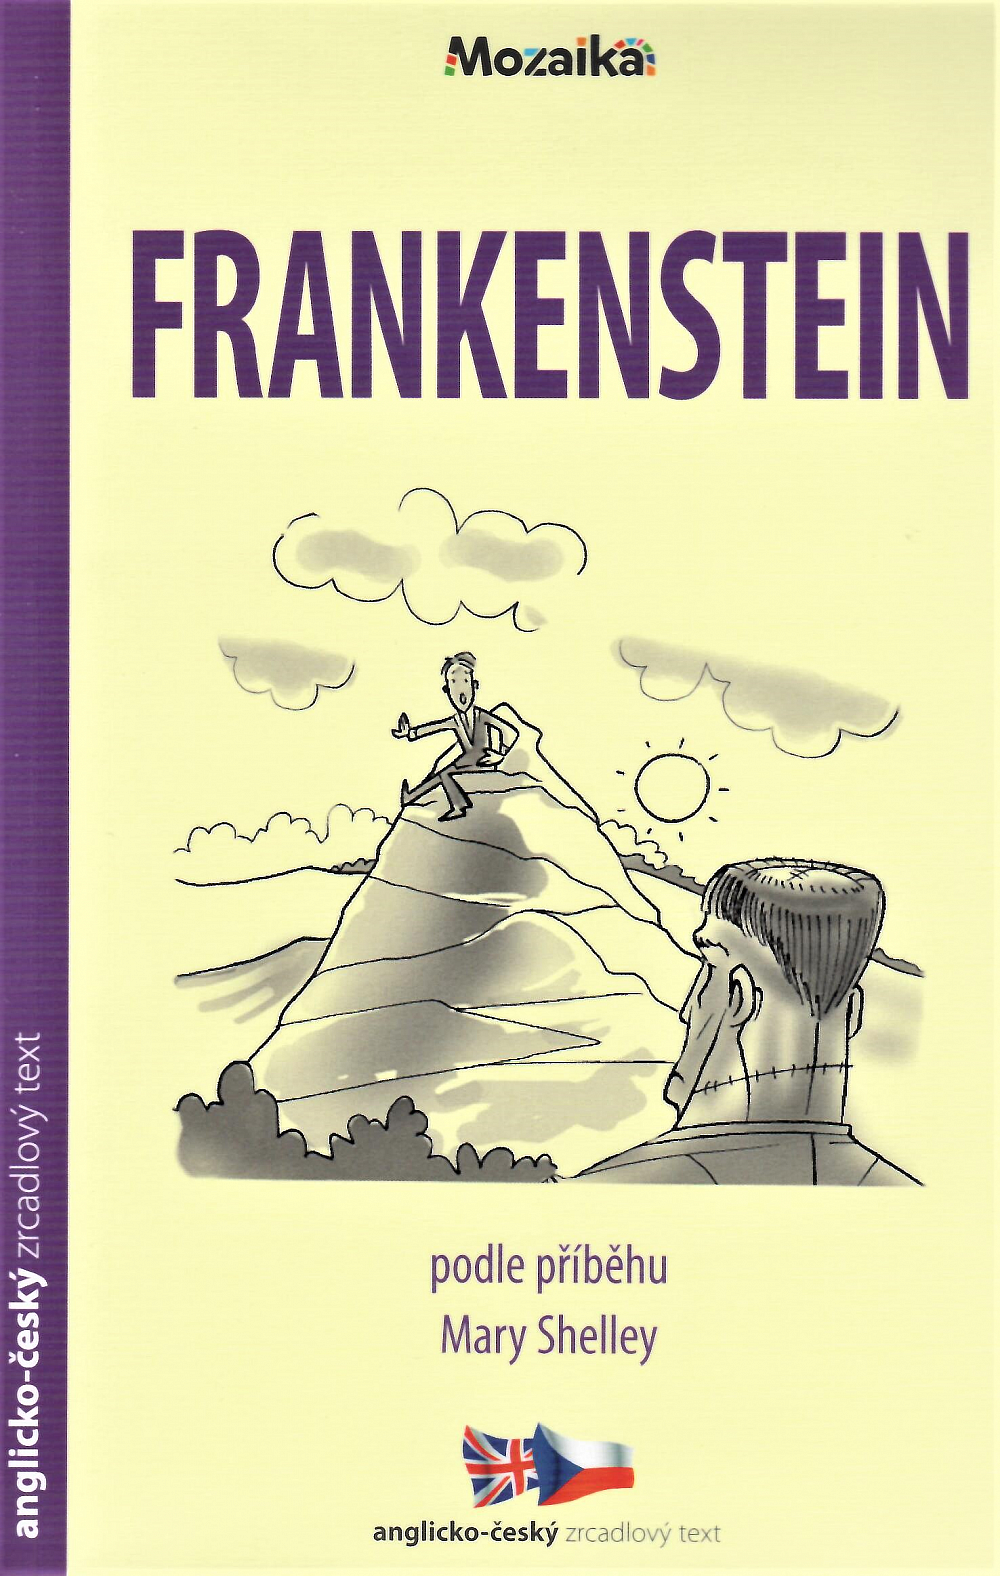 Frankenstein / Frankenstein A1-A2